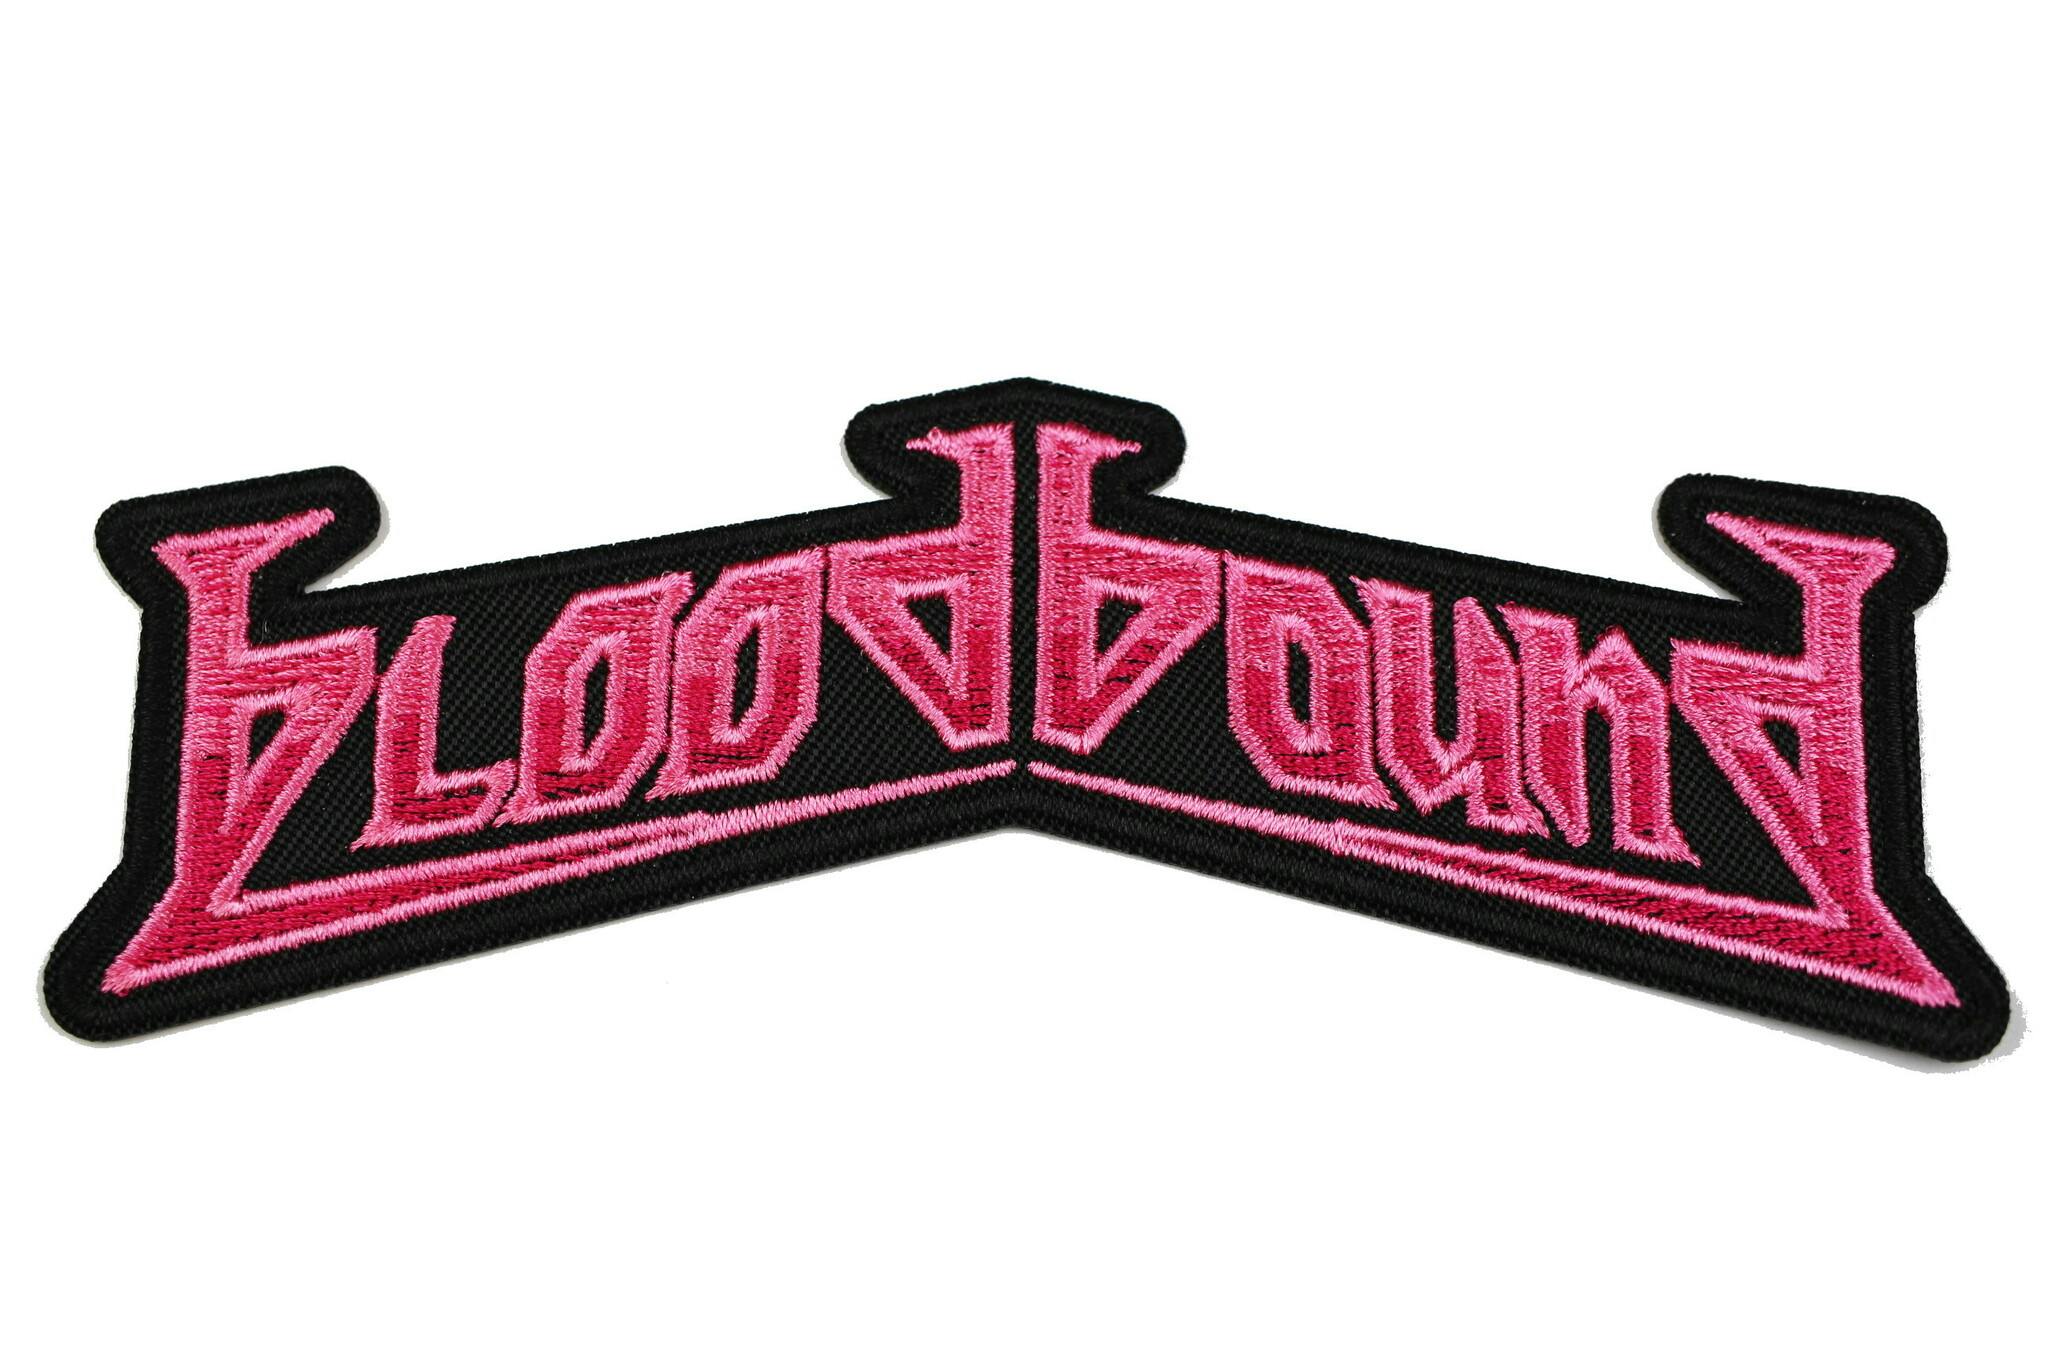 Bloodbound logo patch